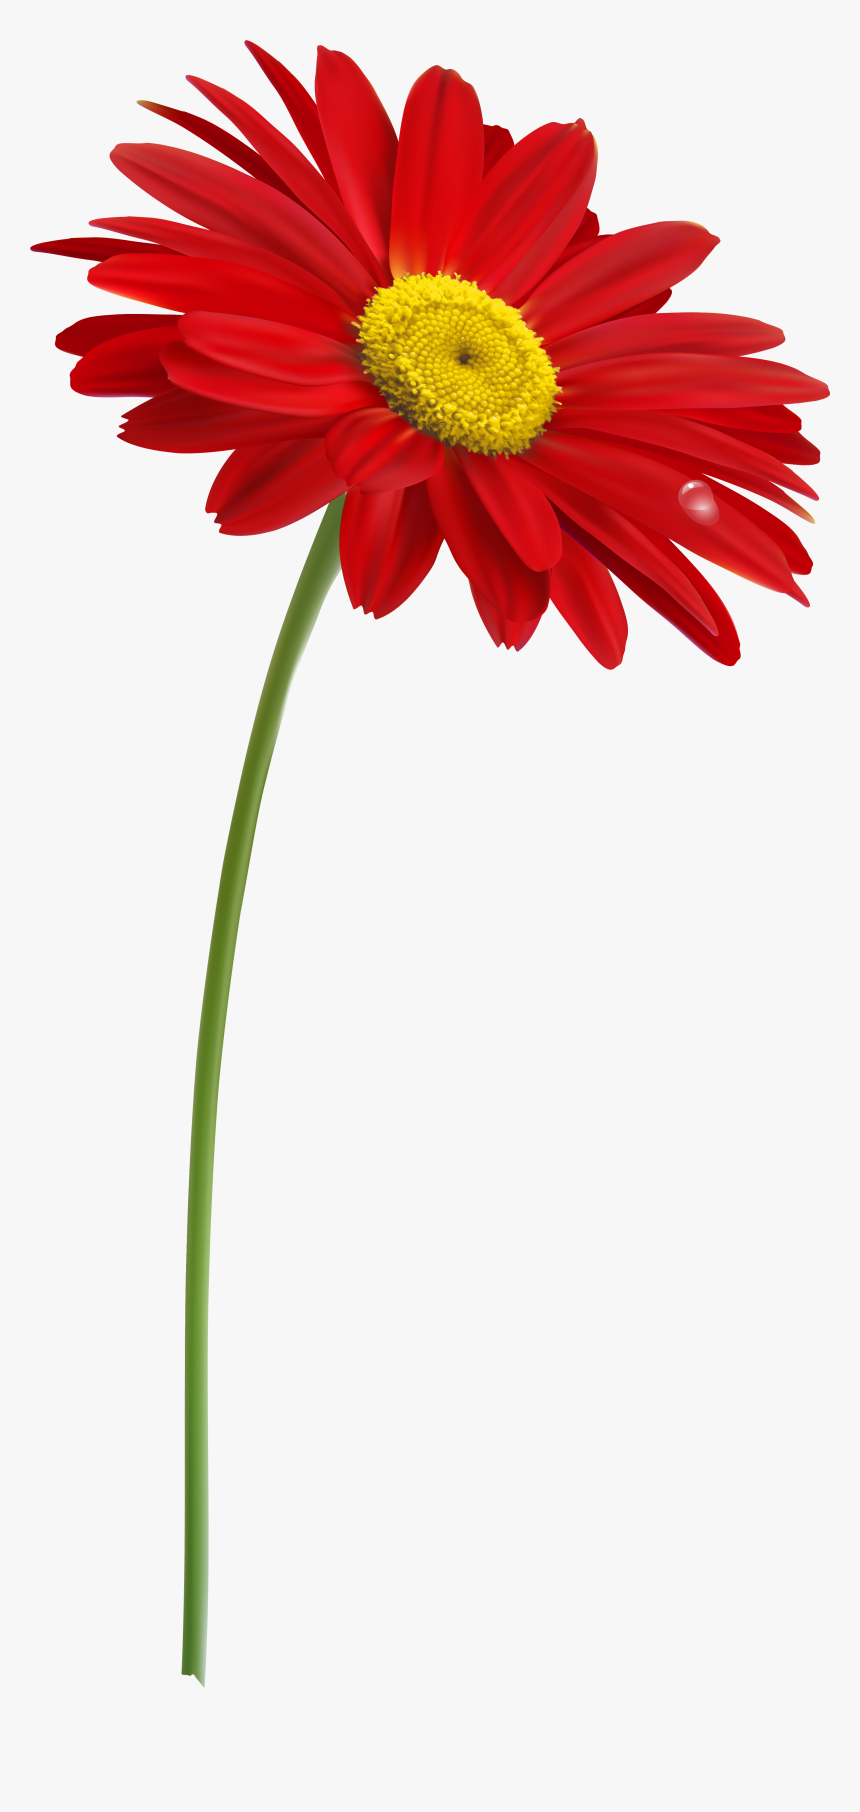 Flower Stem Png - Flower With Stem Png, Transparent Png, Free Download